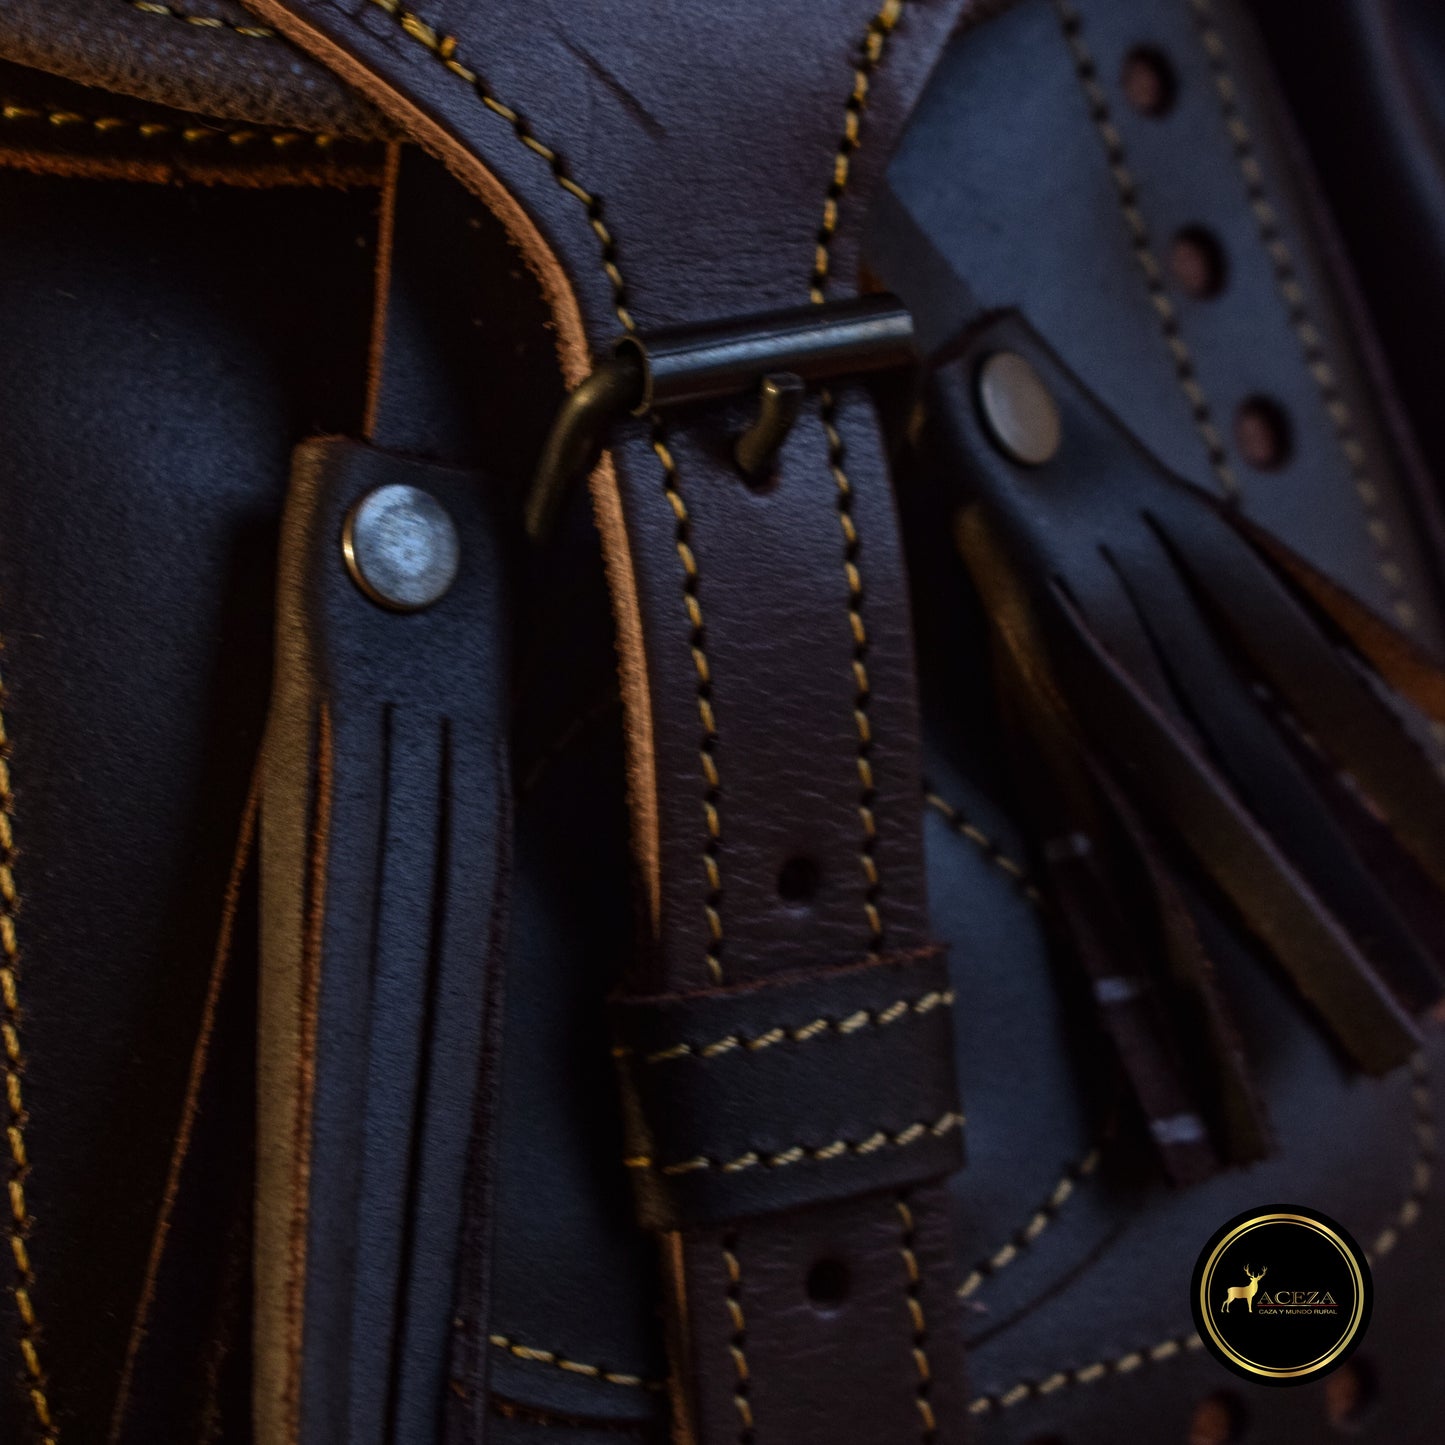 Detalle del bolsillo delantero con cierre en el morral de caza de cuero, proporcionando espacio seguro para tus herramientas esenciales. Descubre la funcionalidad en ACEZA